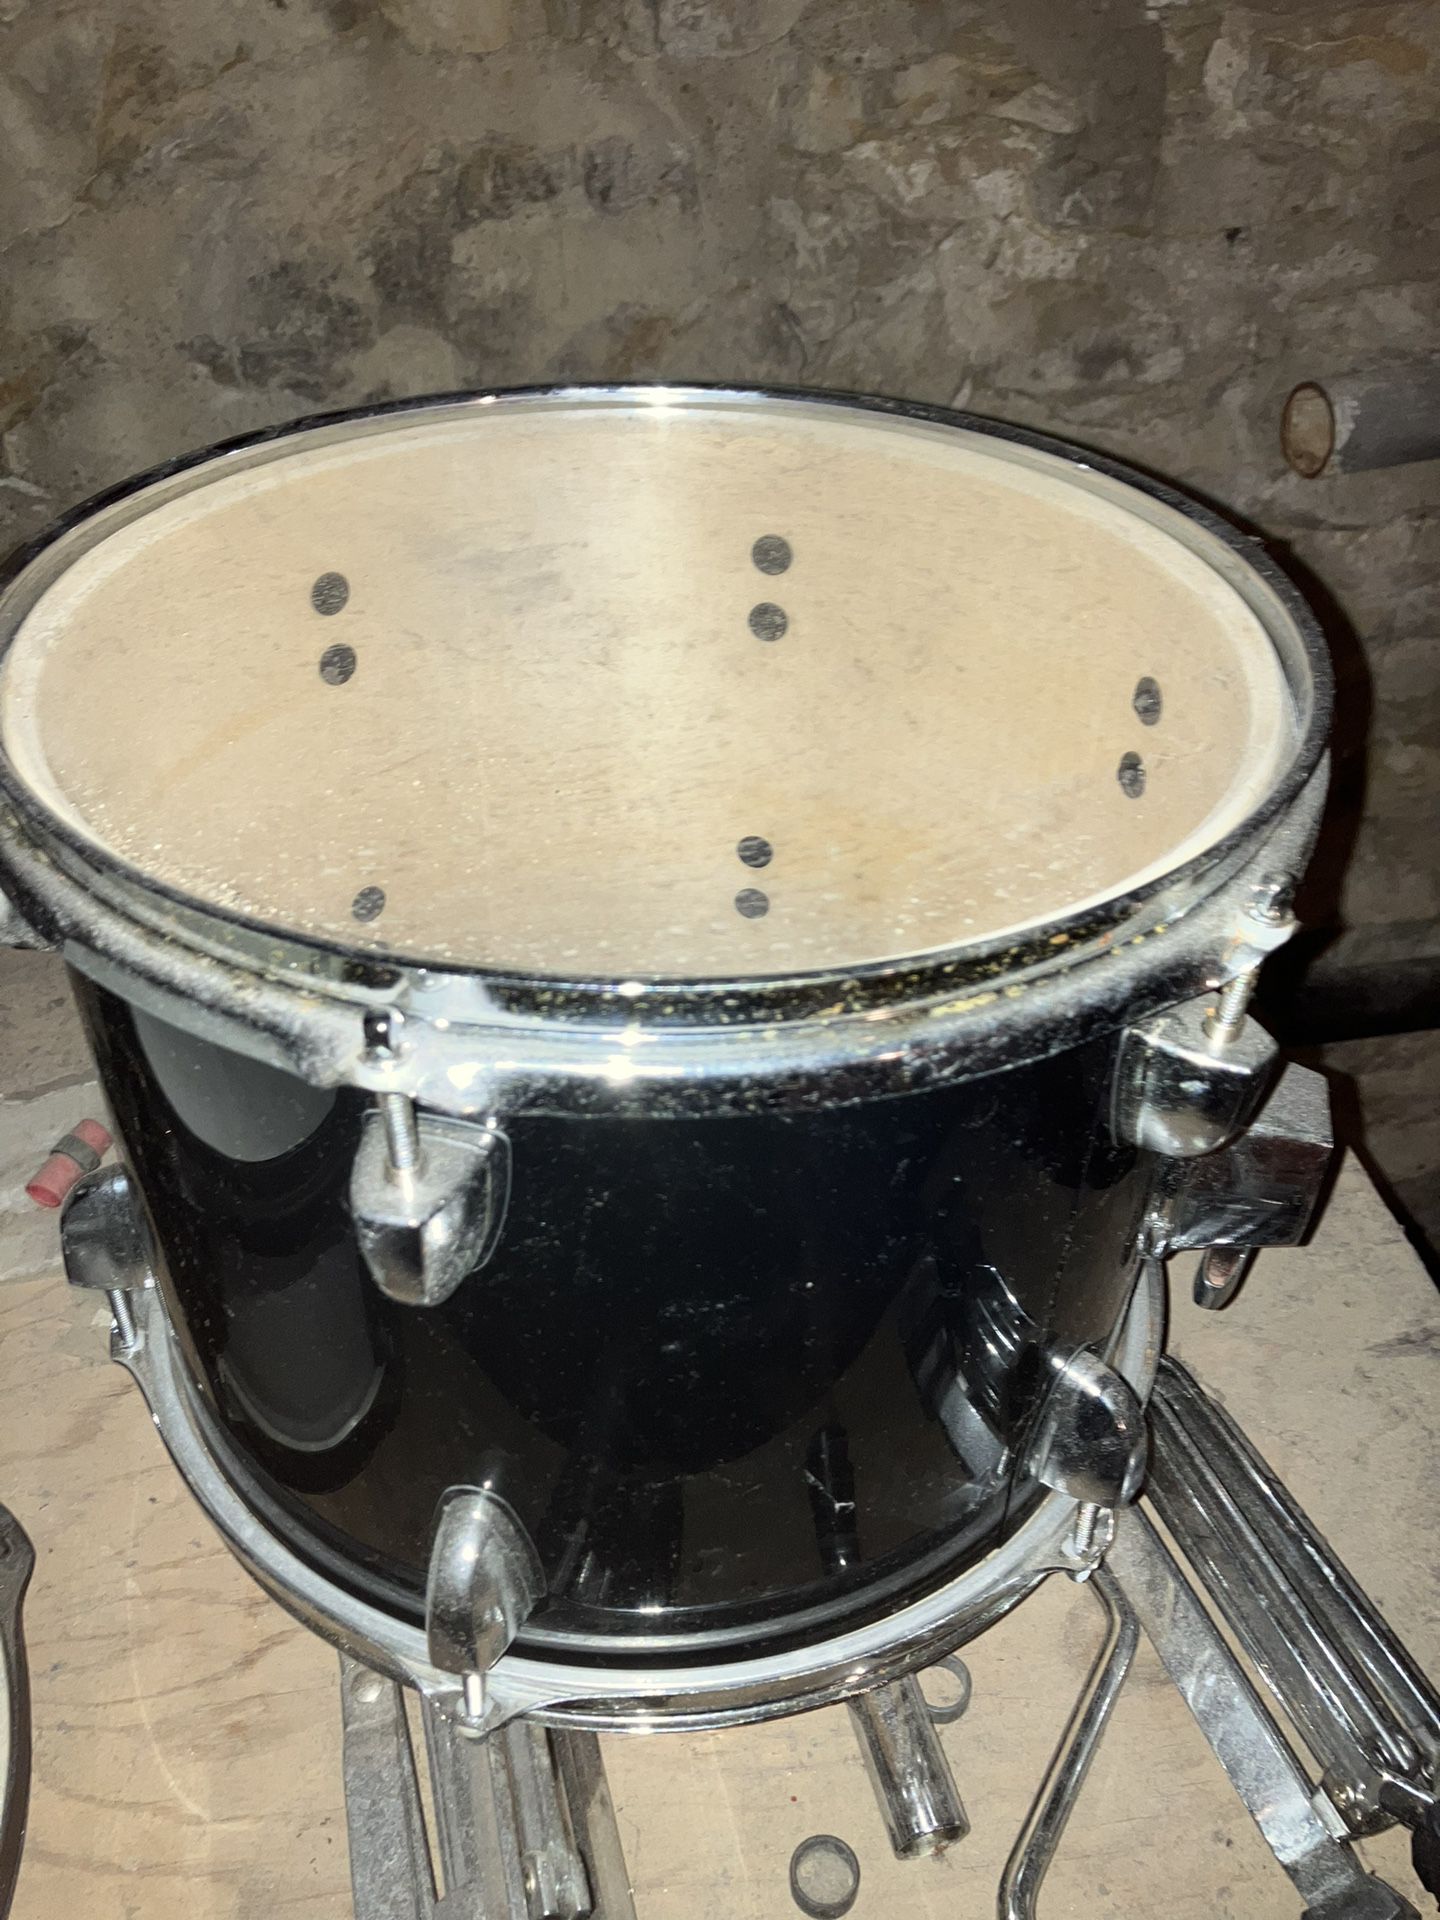 sound percussion drum Set Pieces 